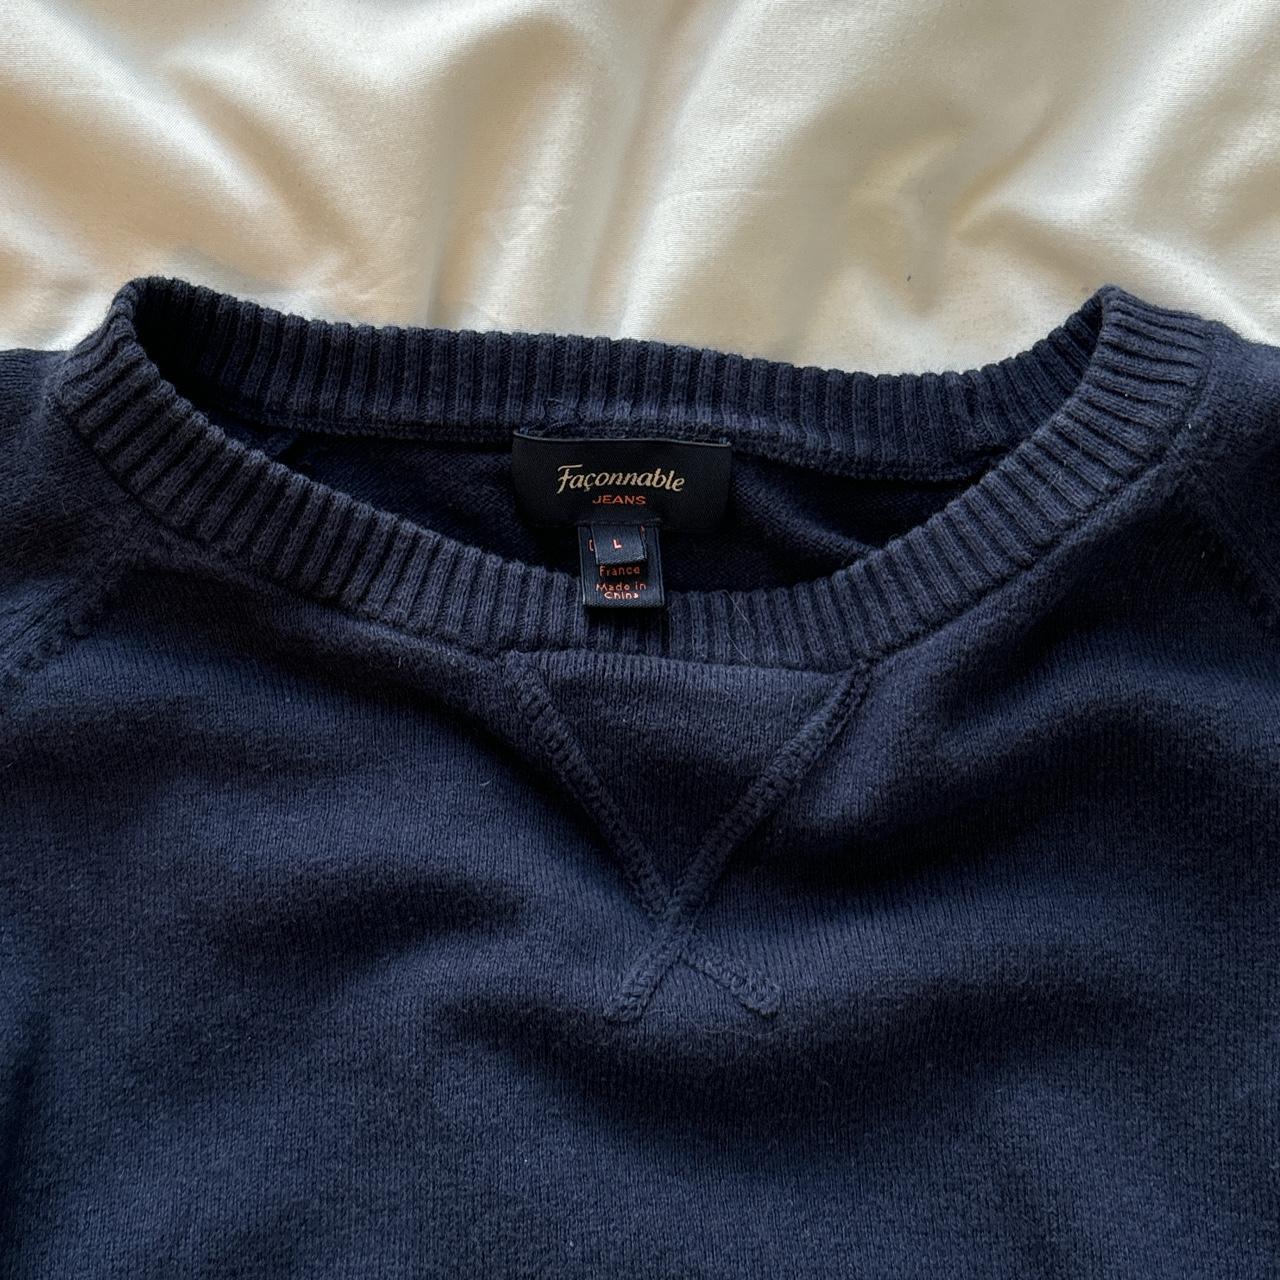 Faconnable jeans sweater original size L but it... - Depop